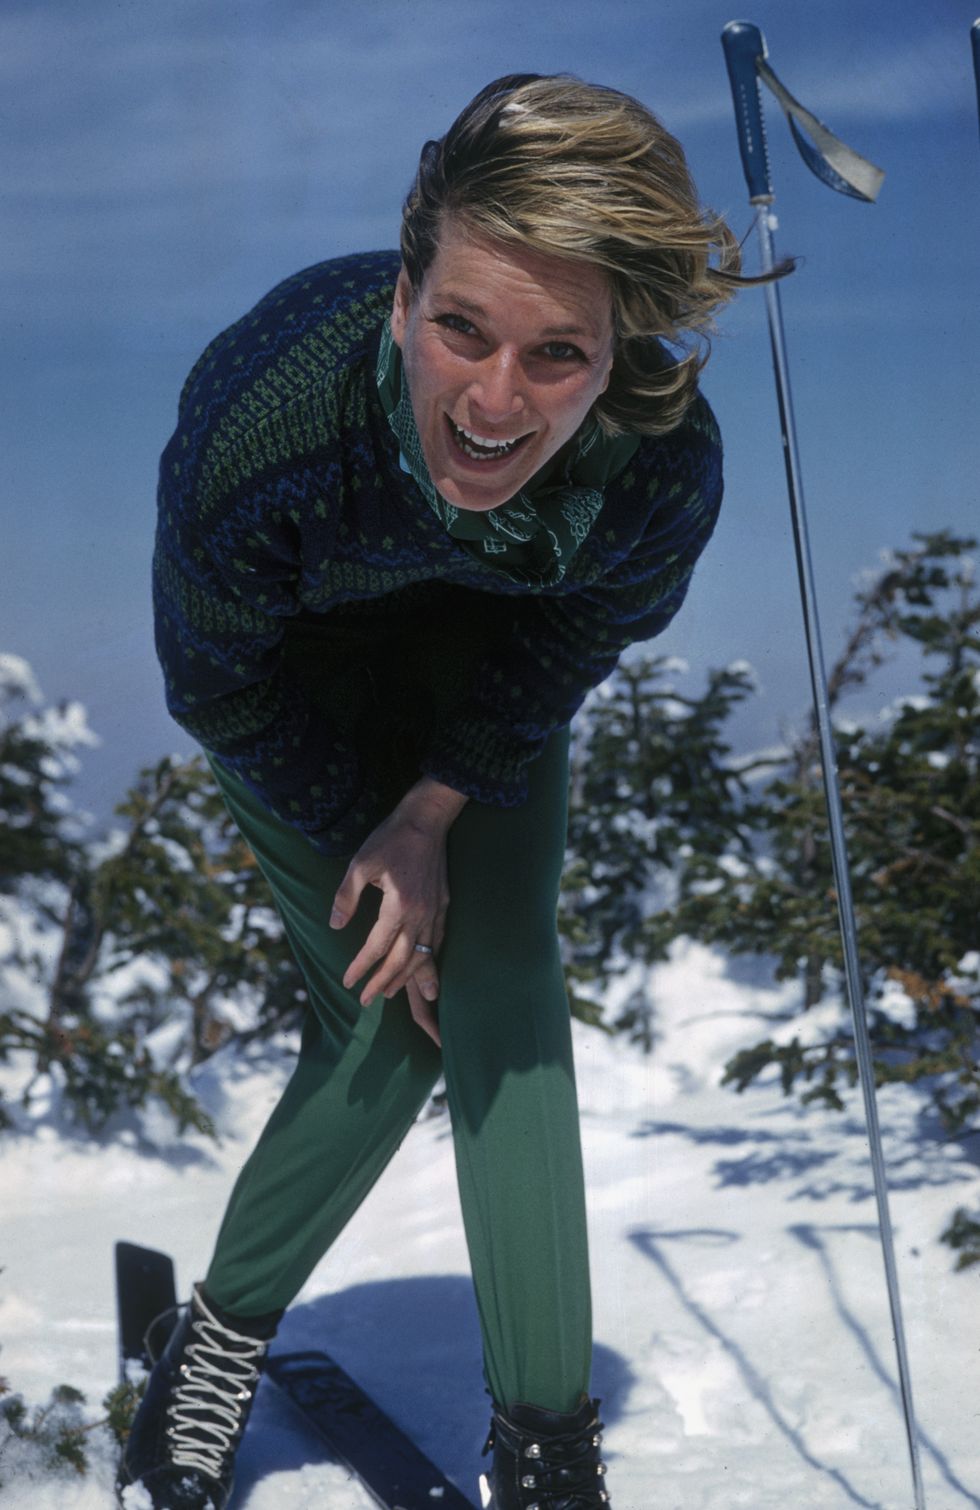 laughing skier